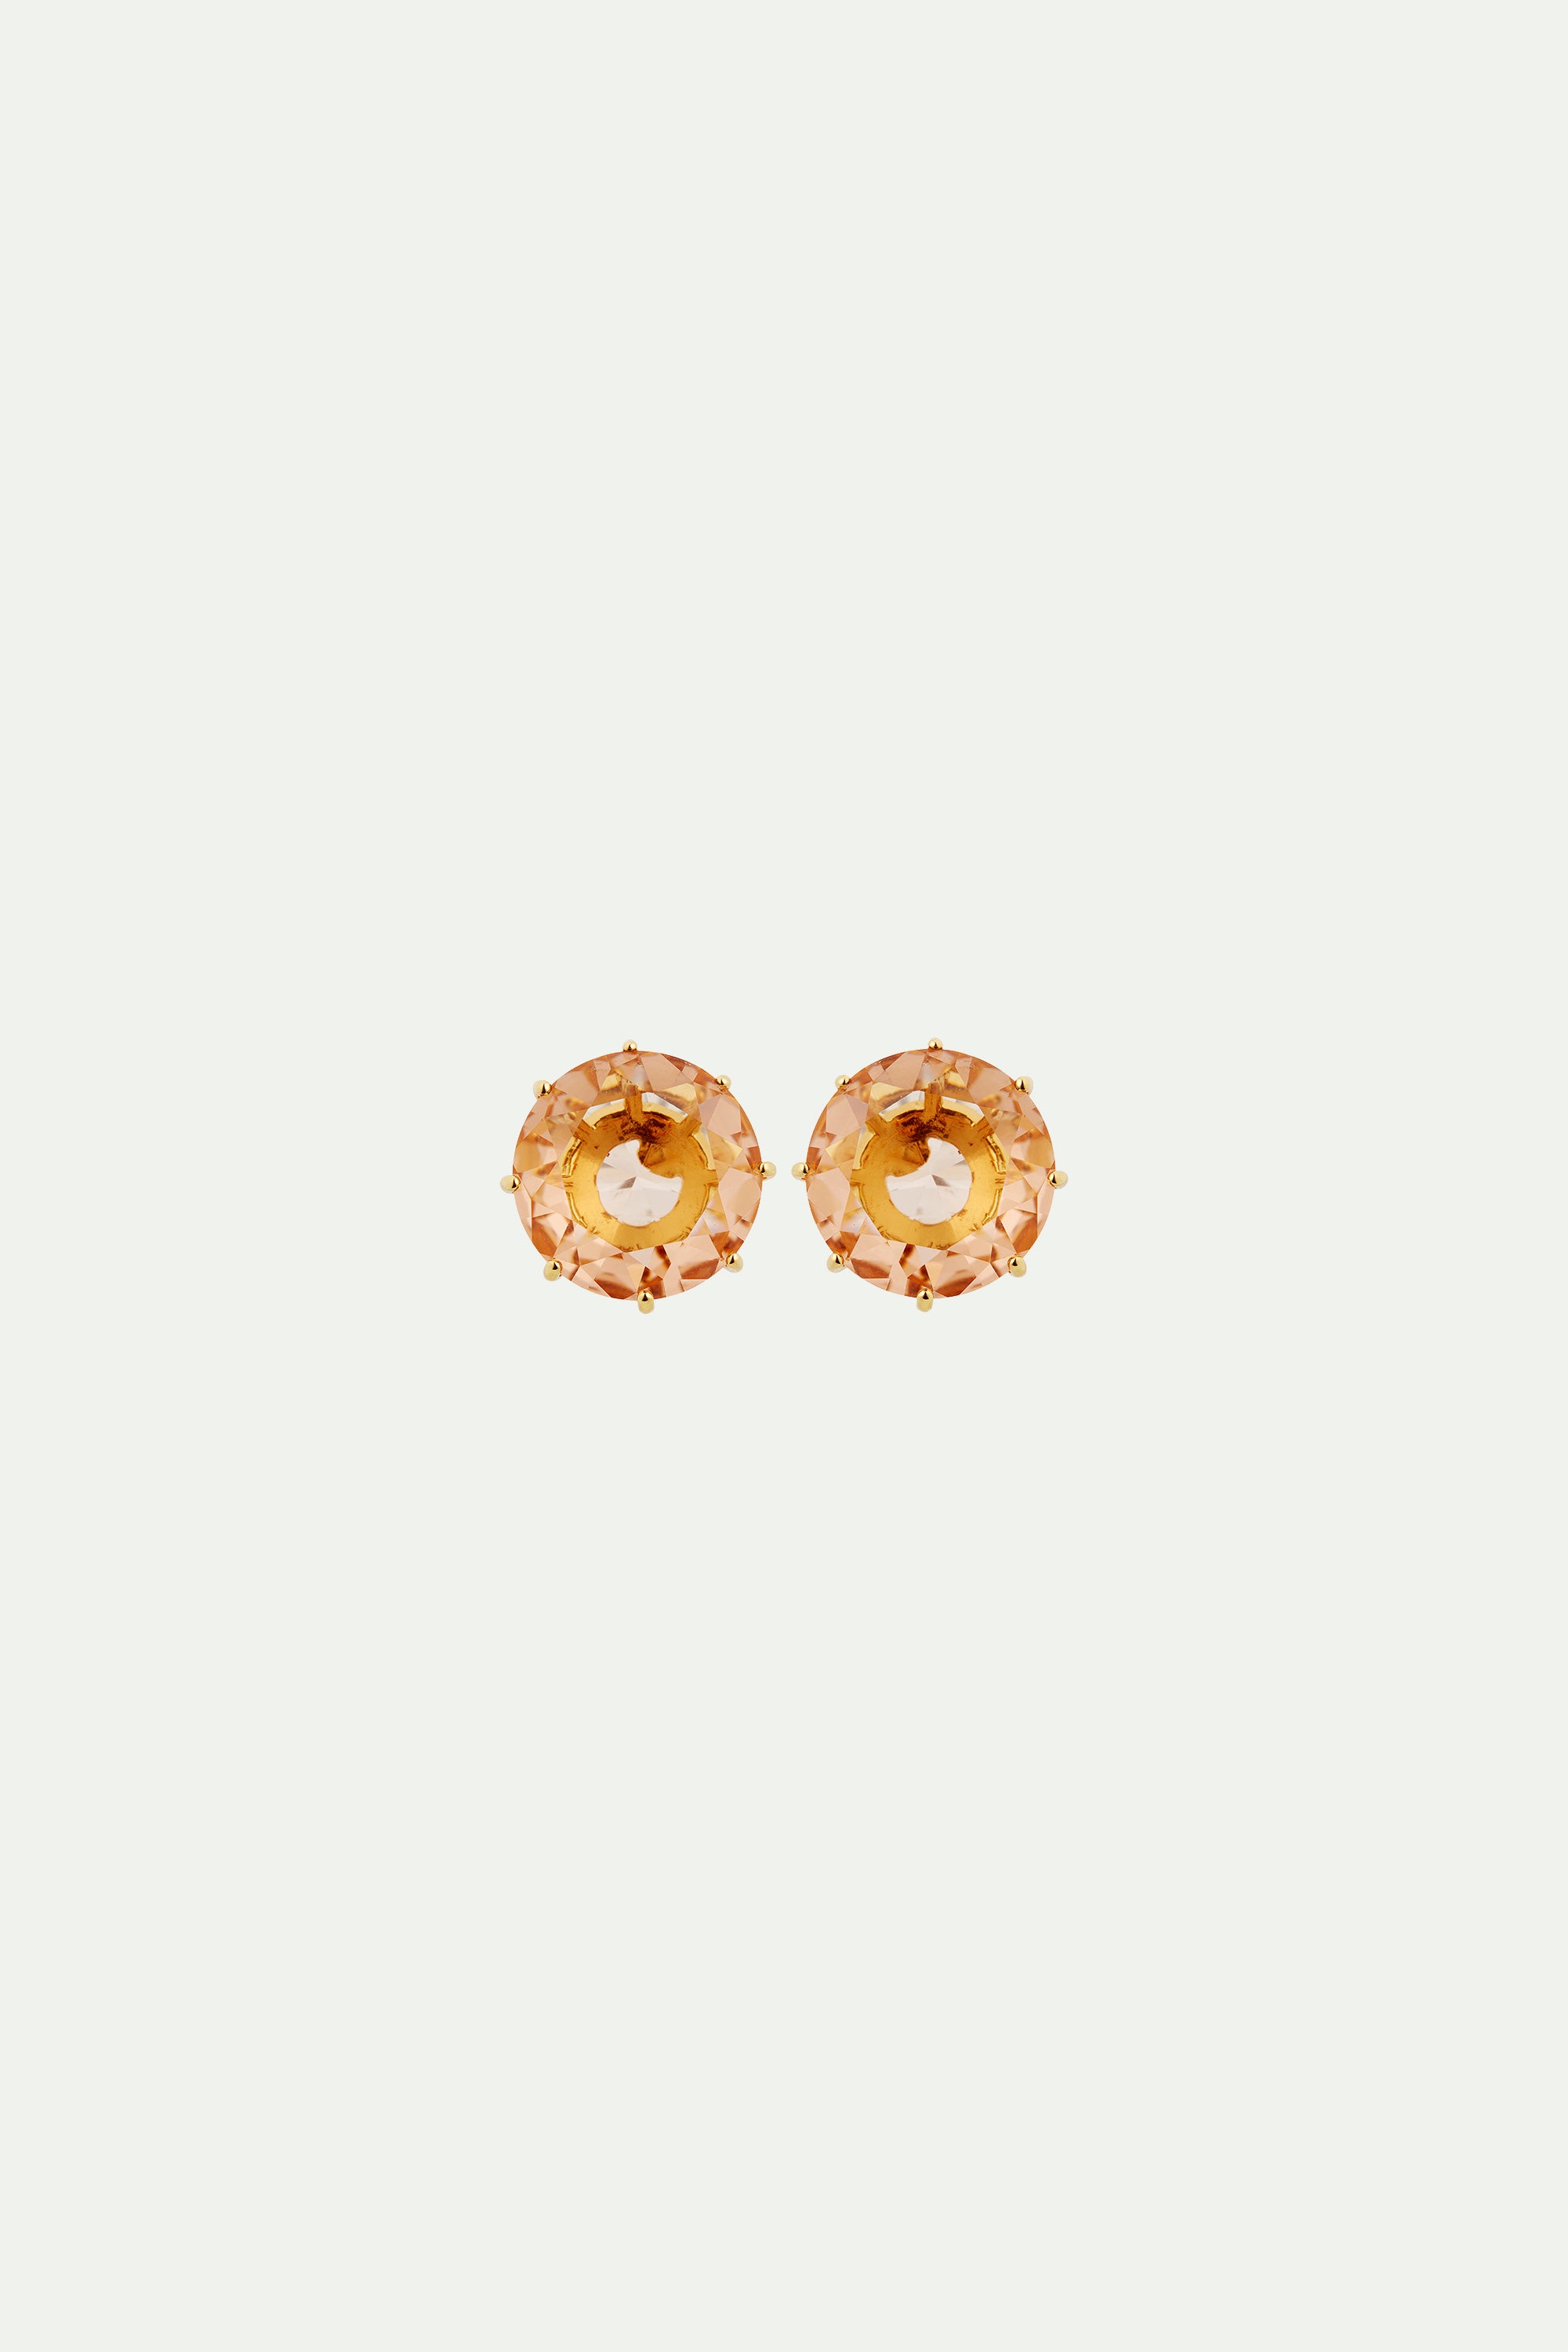 Boucles d'oreilles tiges pierre ronde la diamantine rose abricot